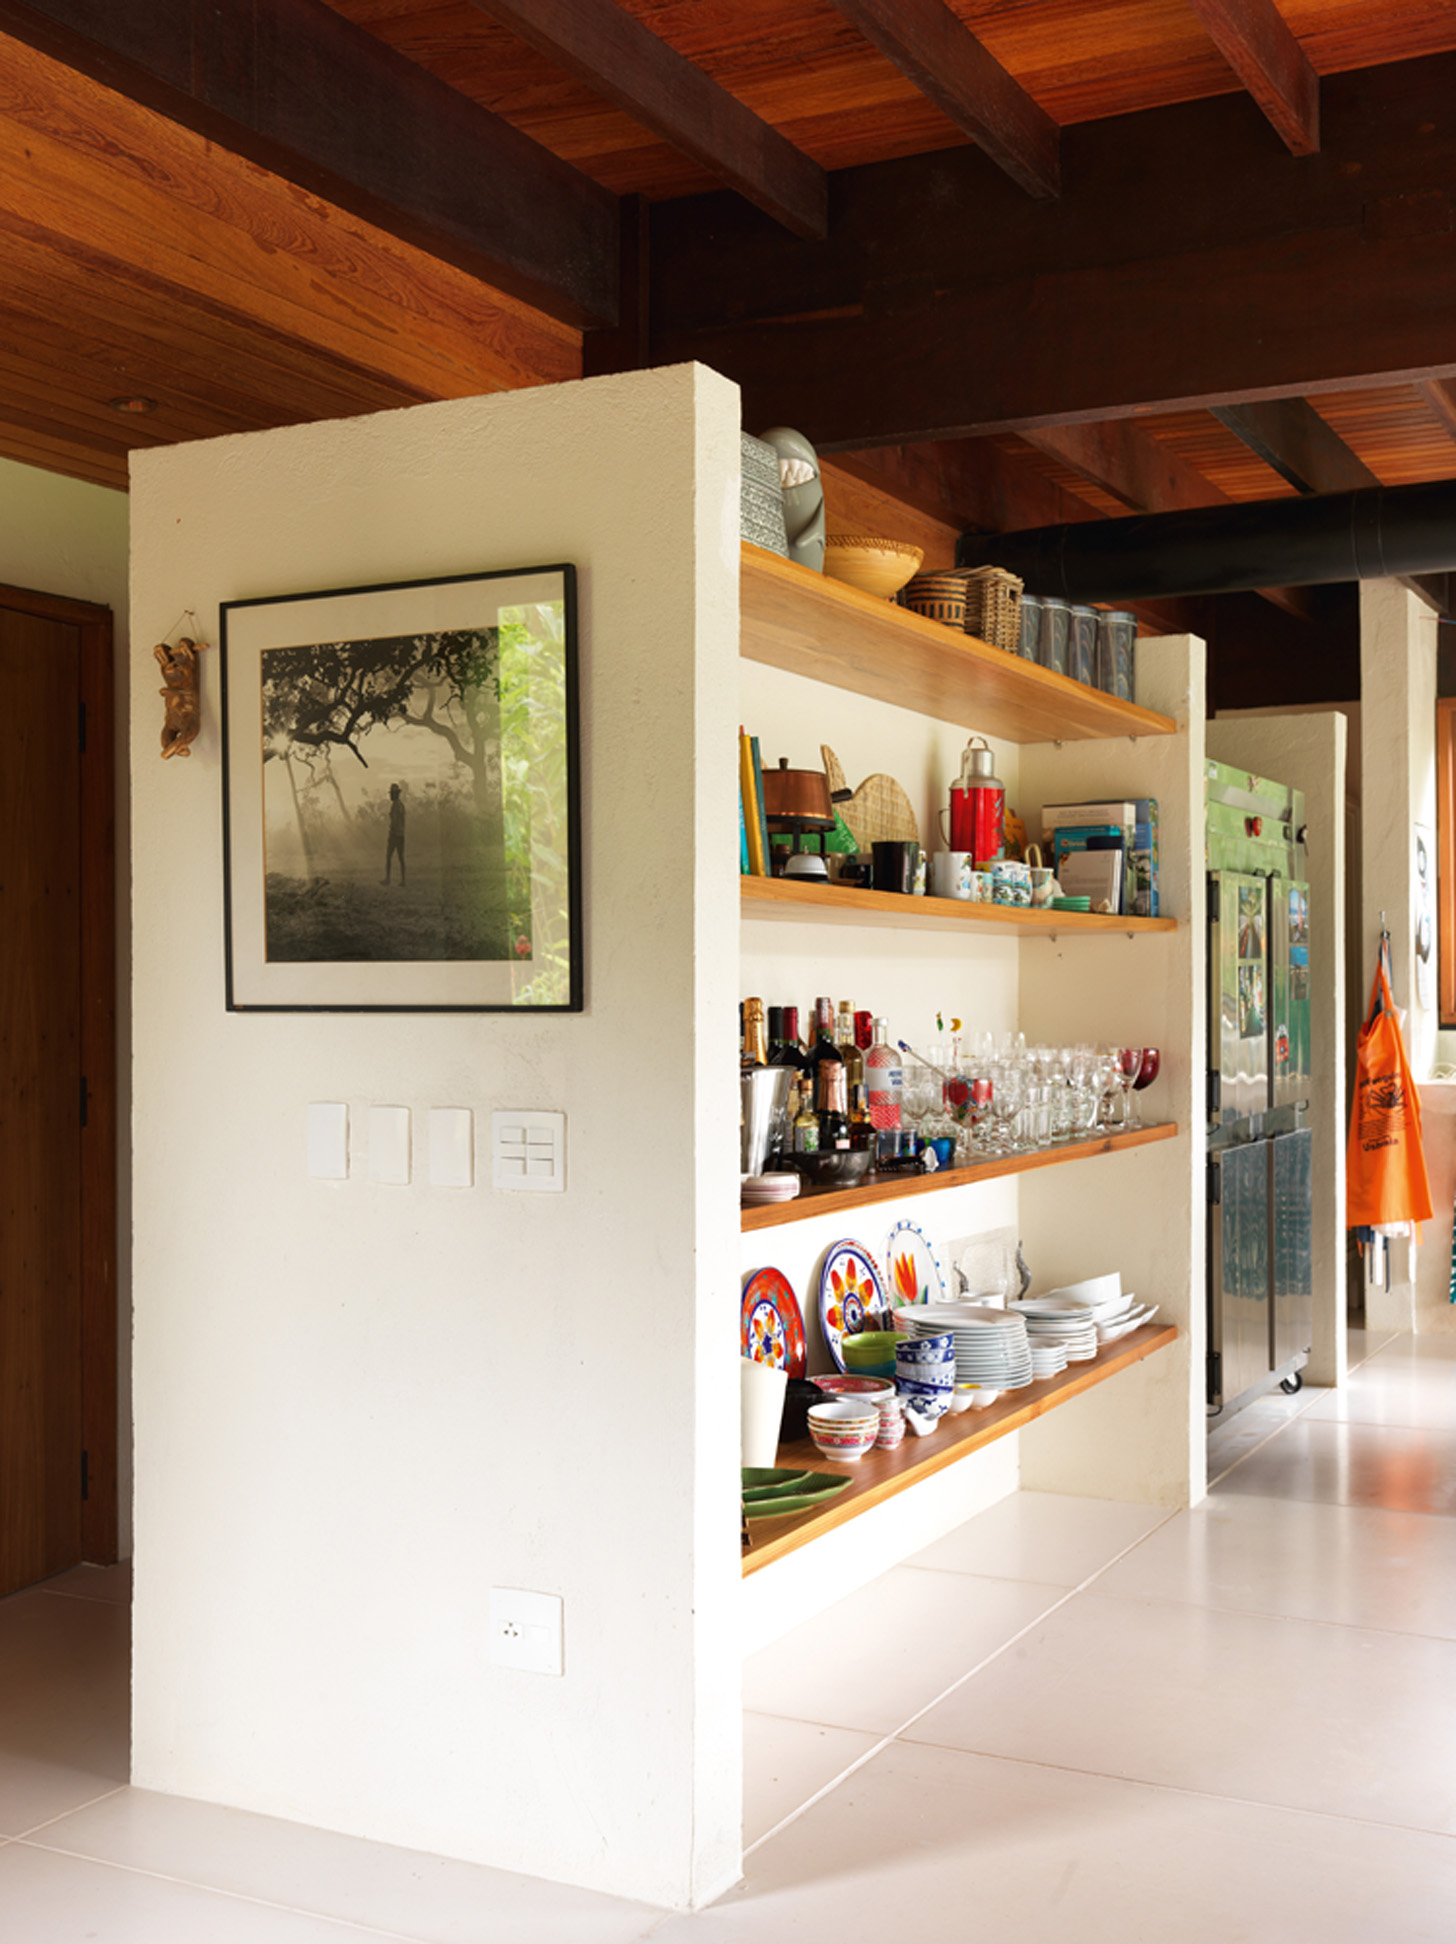 À mão: Na cozinha, as estantes de madeira fazem as vezes de armários e deixam os objetos à mostra, fáceis de pegar. Fotografia de Marcos Prado, amigo da família